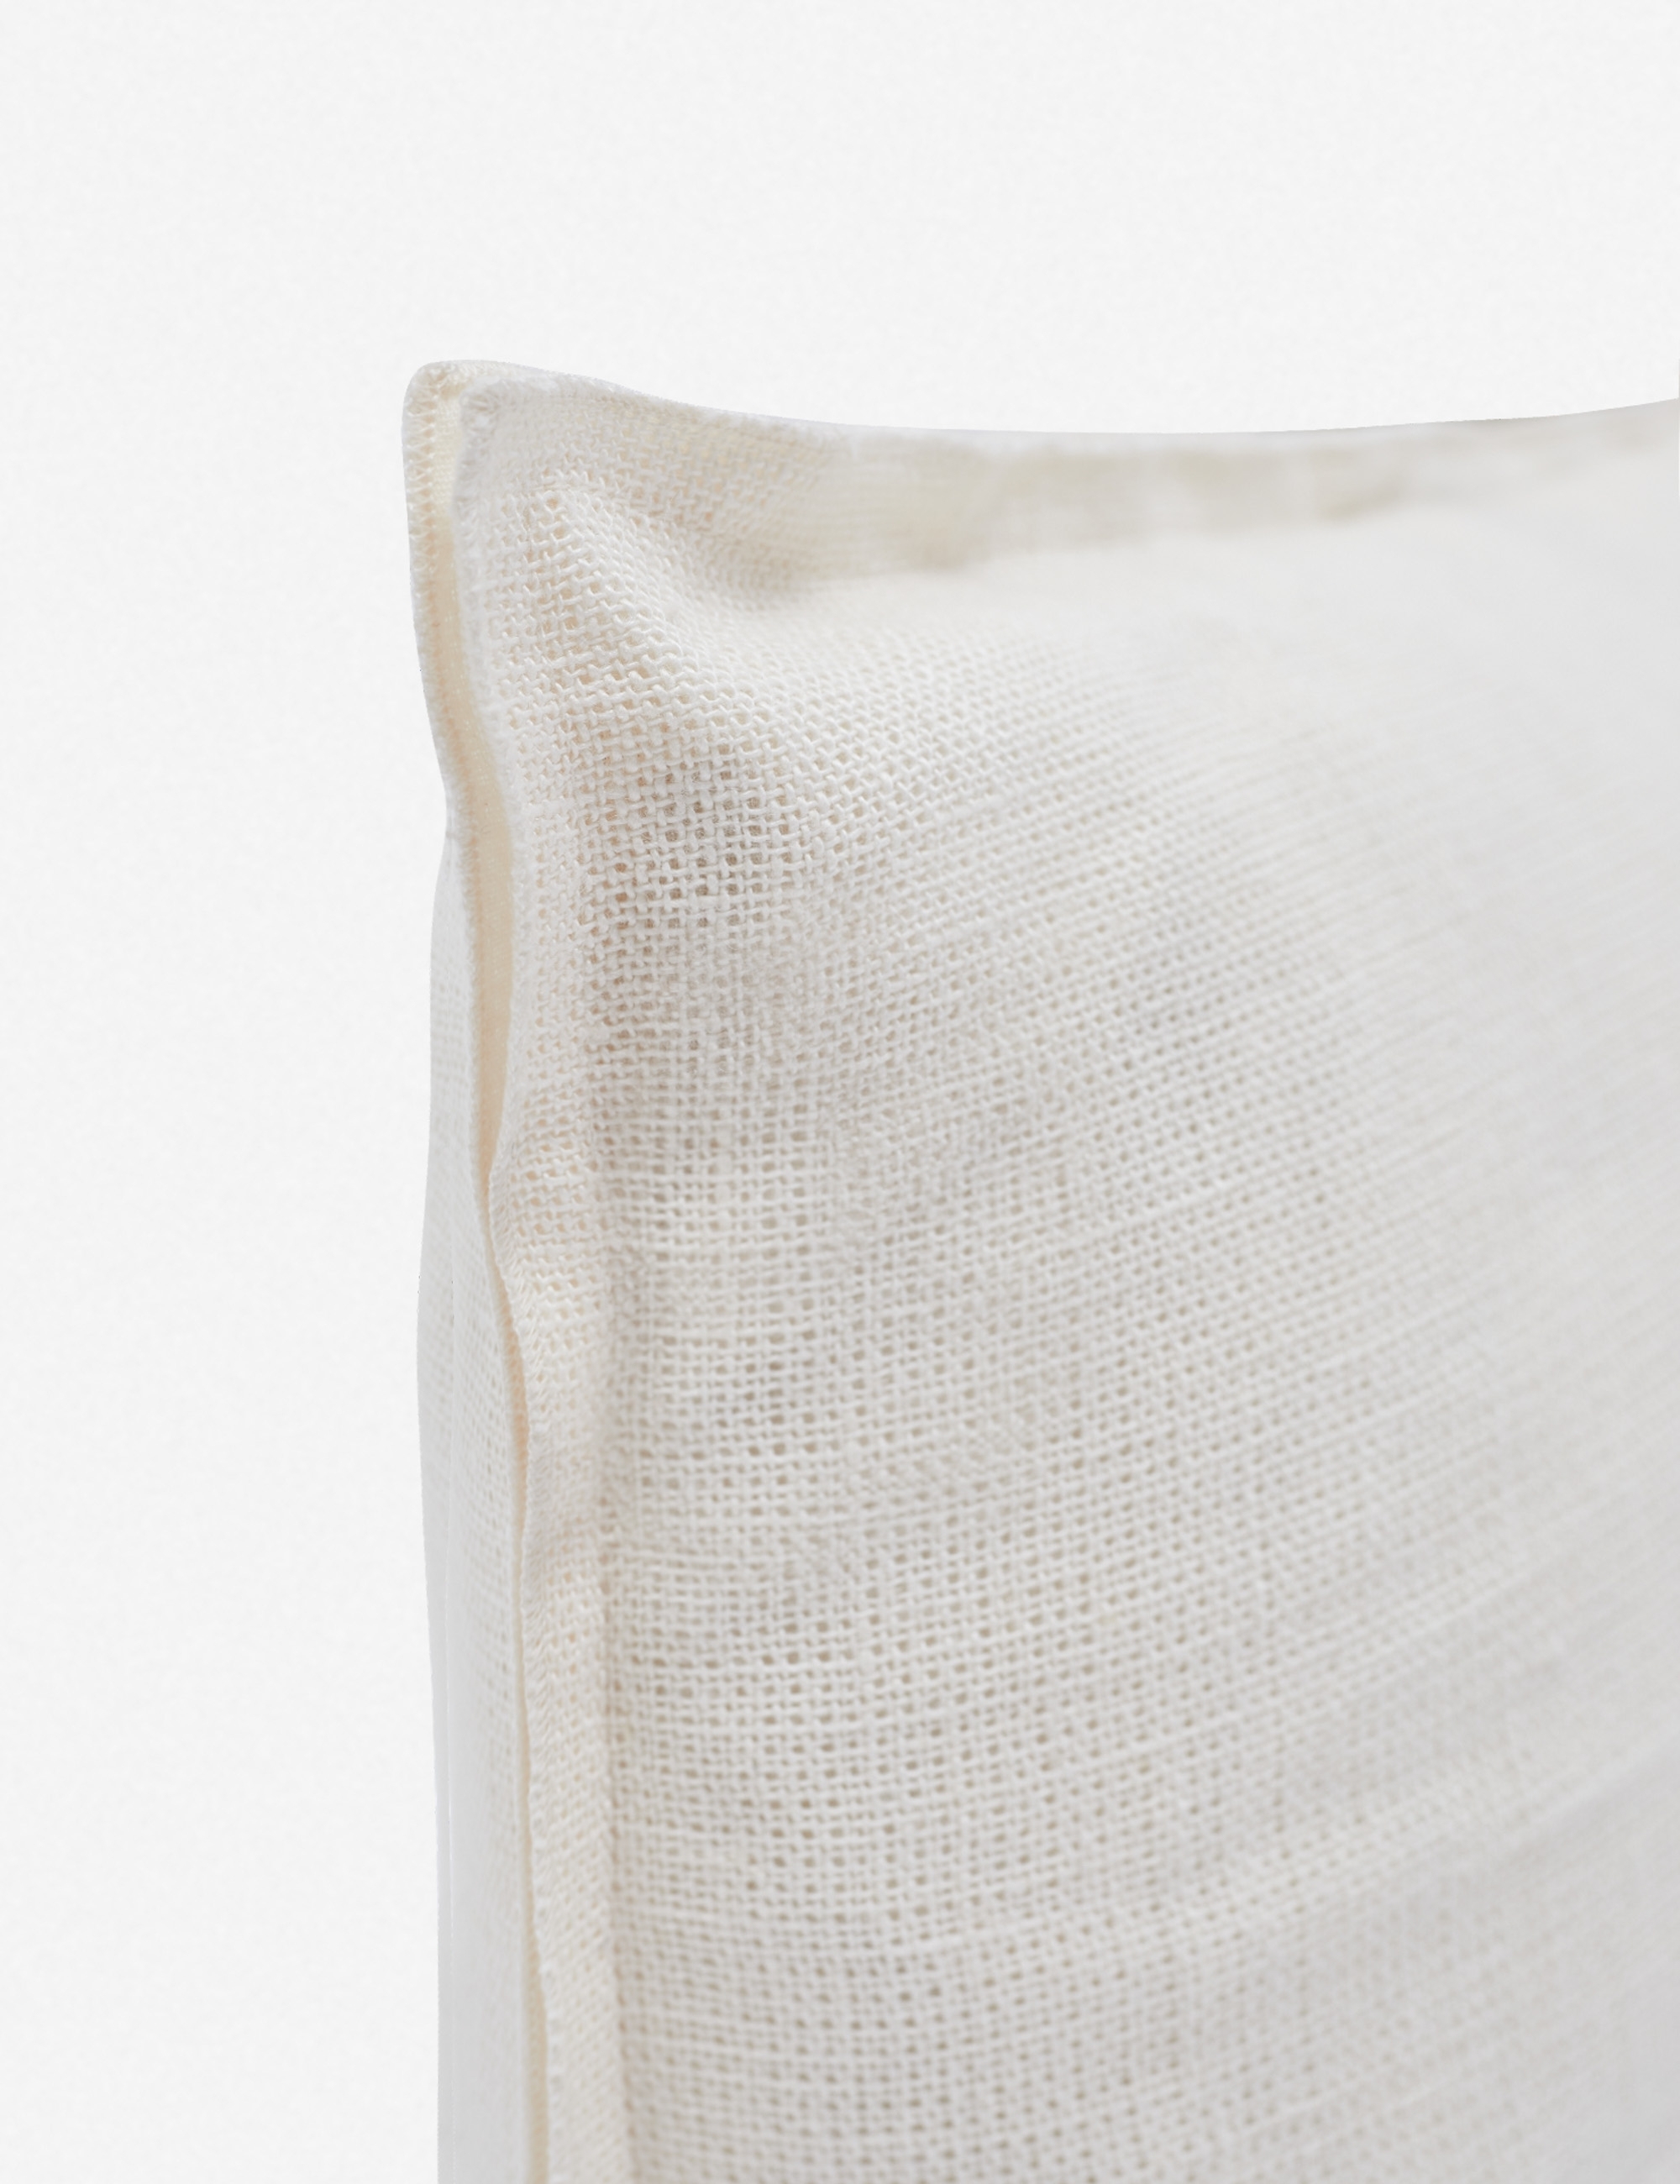 Arlo Linen Lumbar Pillow, Ivory - Image 2